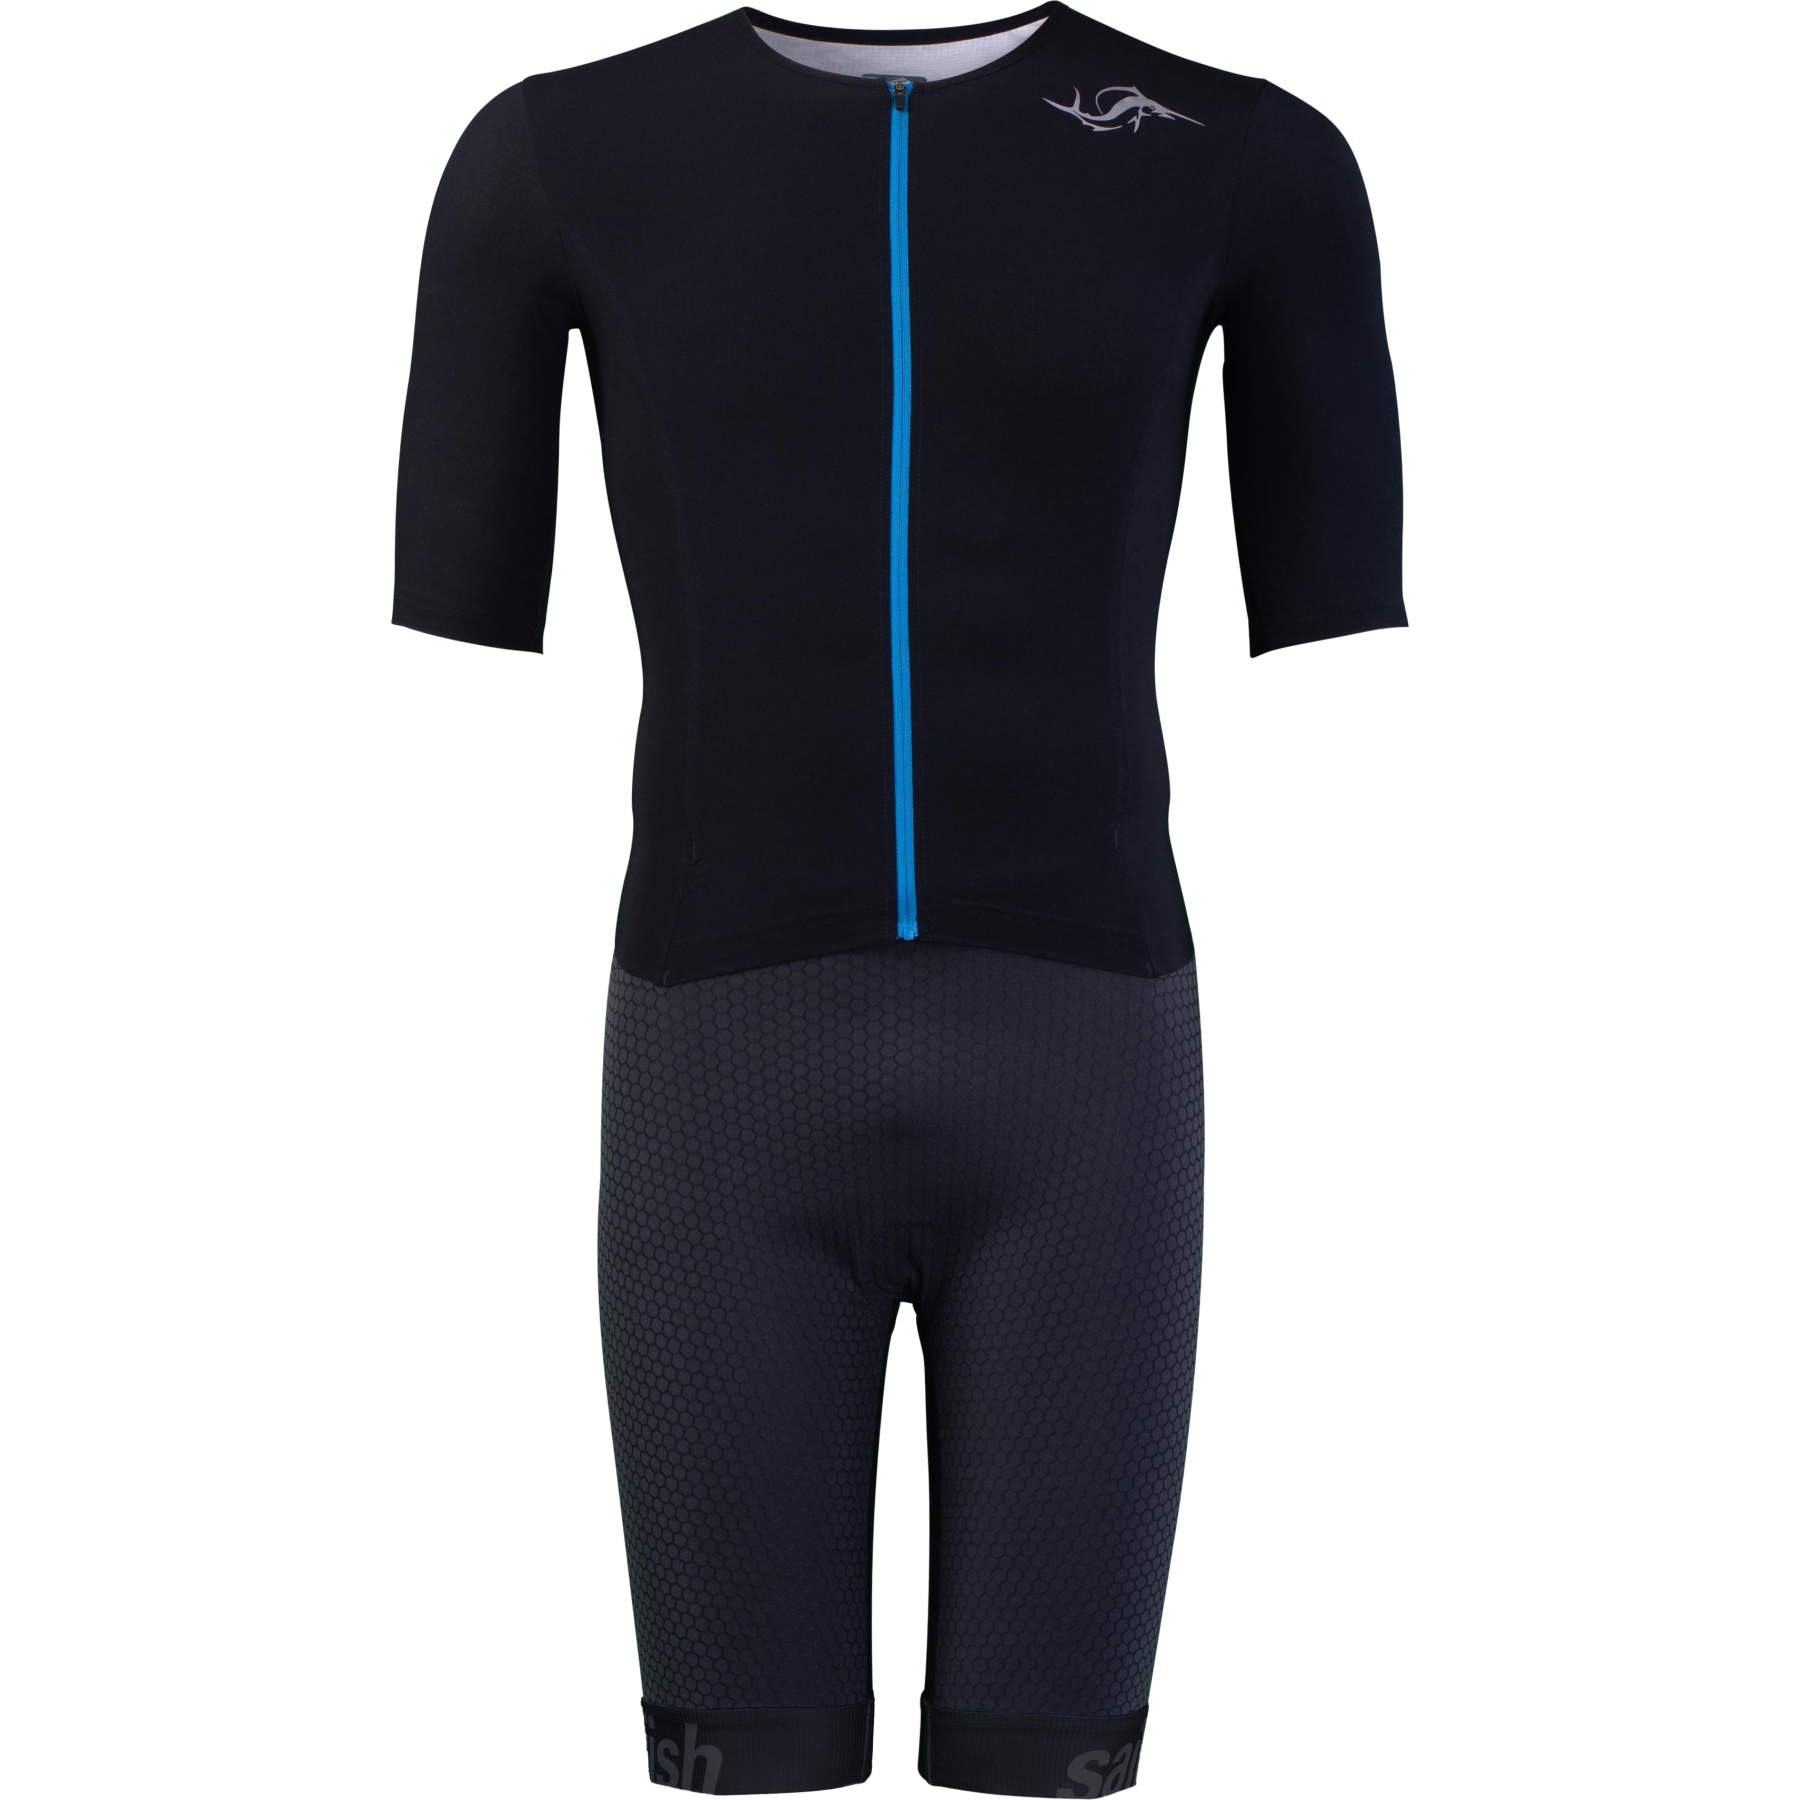 Produktbild von sailfish Herren Aerosuit Pro Triathlon-Einteiler - schwarz/blau